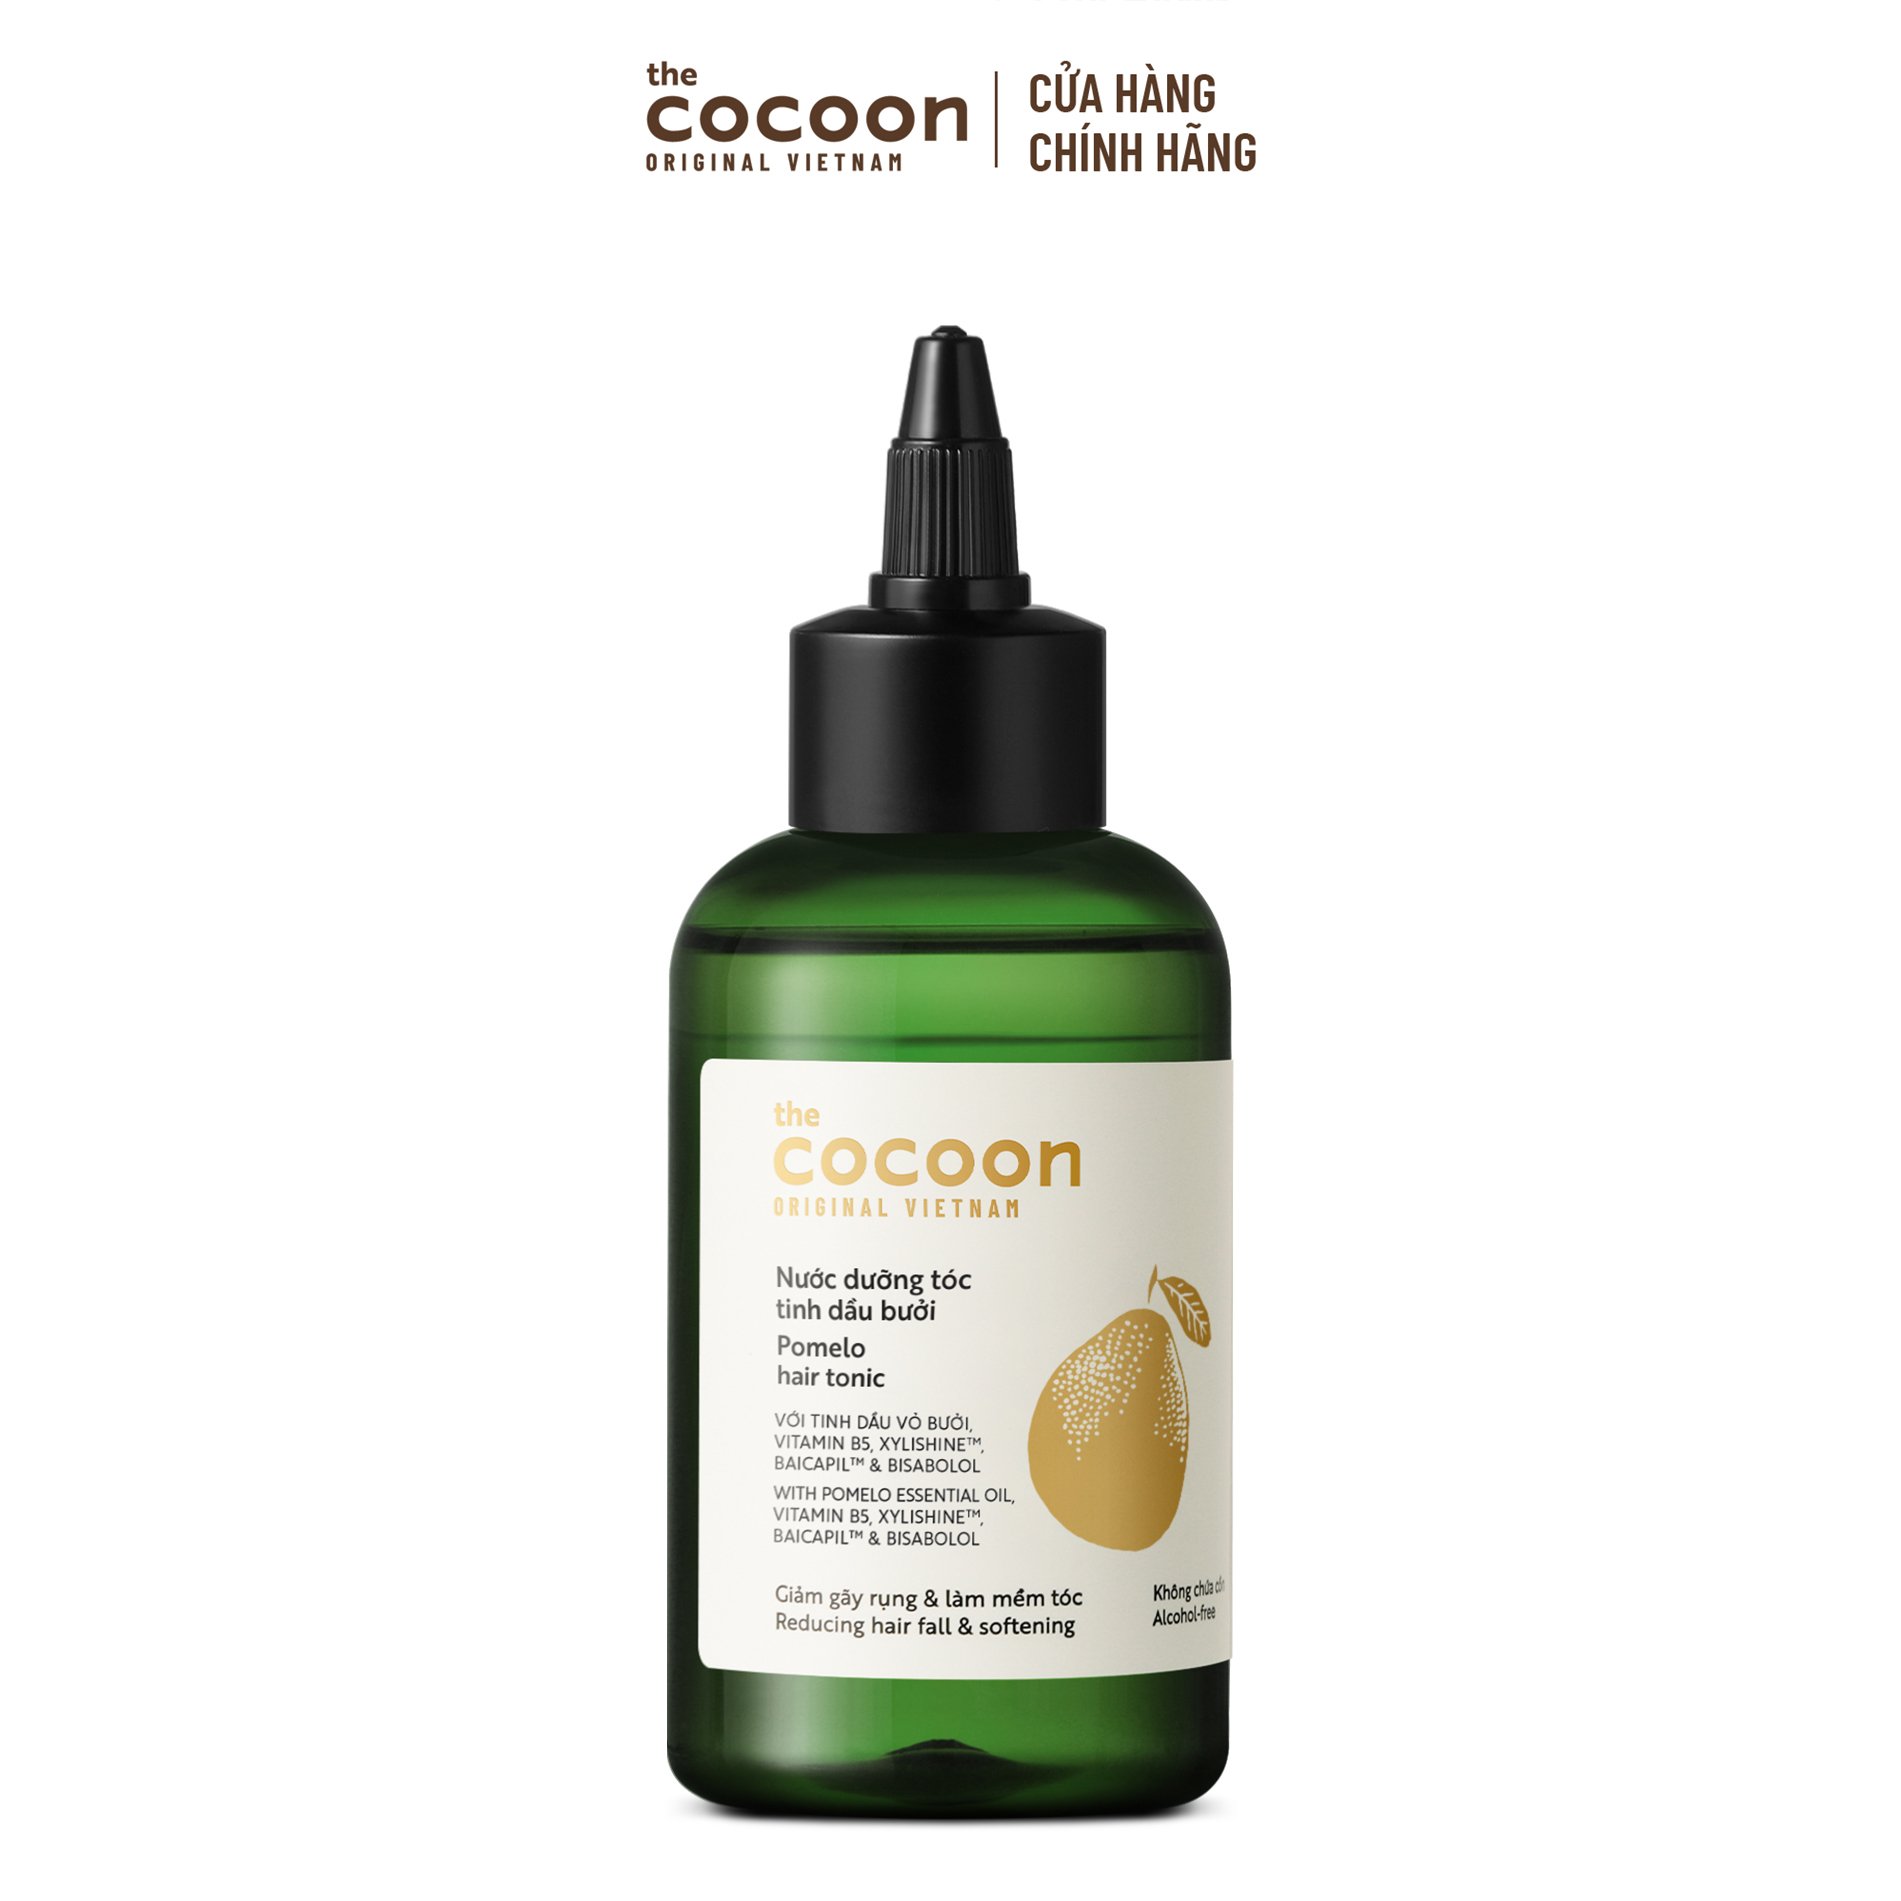 PHIÊN BẢN MỚI - Nước dưỡng tóc tinh dầu bưởi Cocoon giúp giảm gãy rụng &amp; làm mềm tóc 140ml